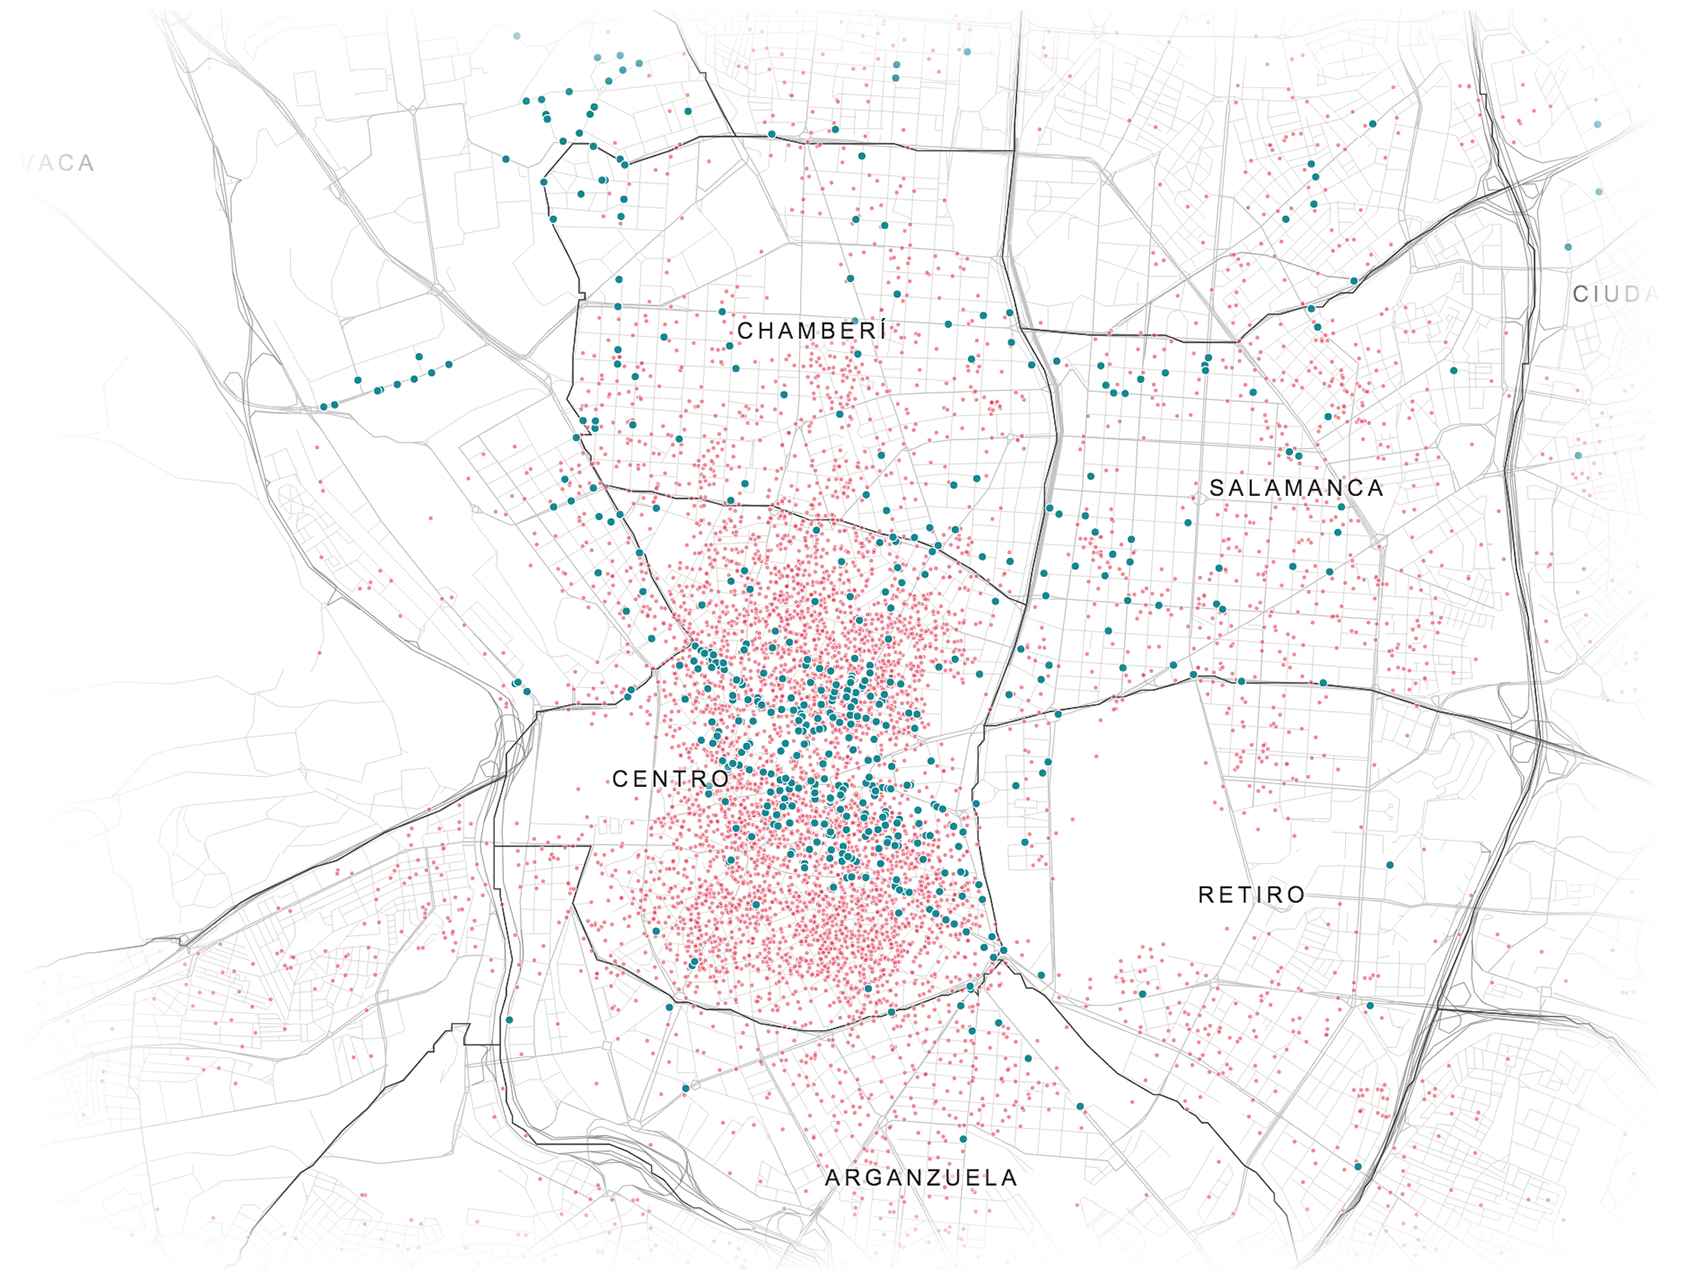 Principales zonas con más oferta de Airbnb en Madrid.